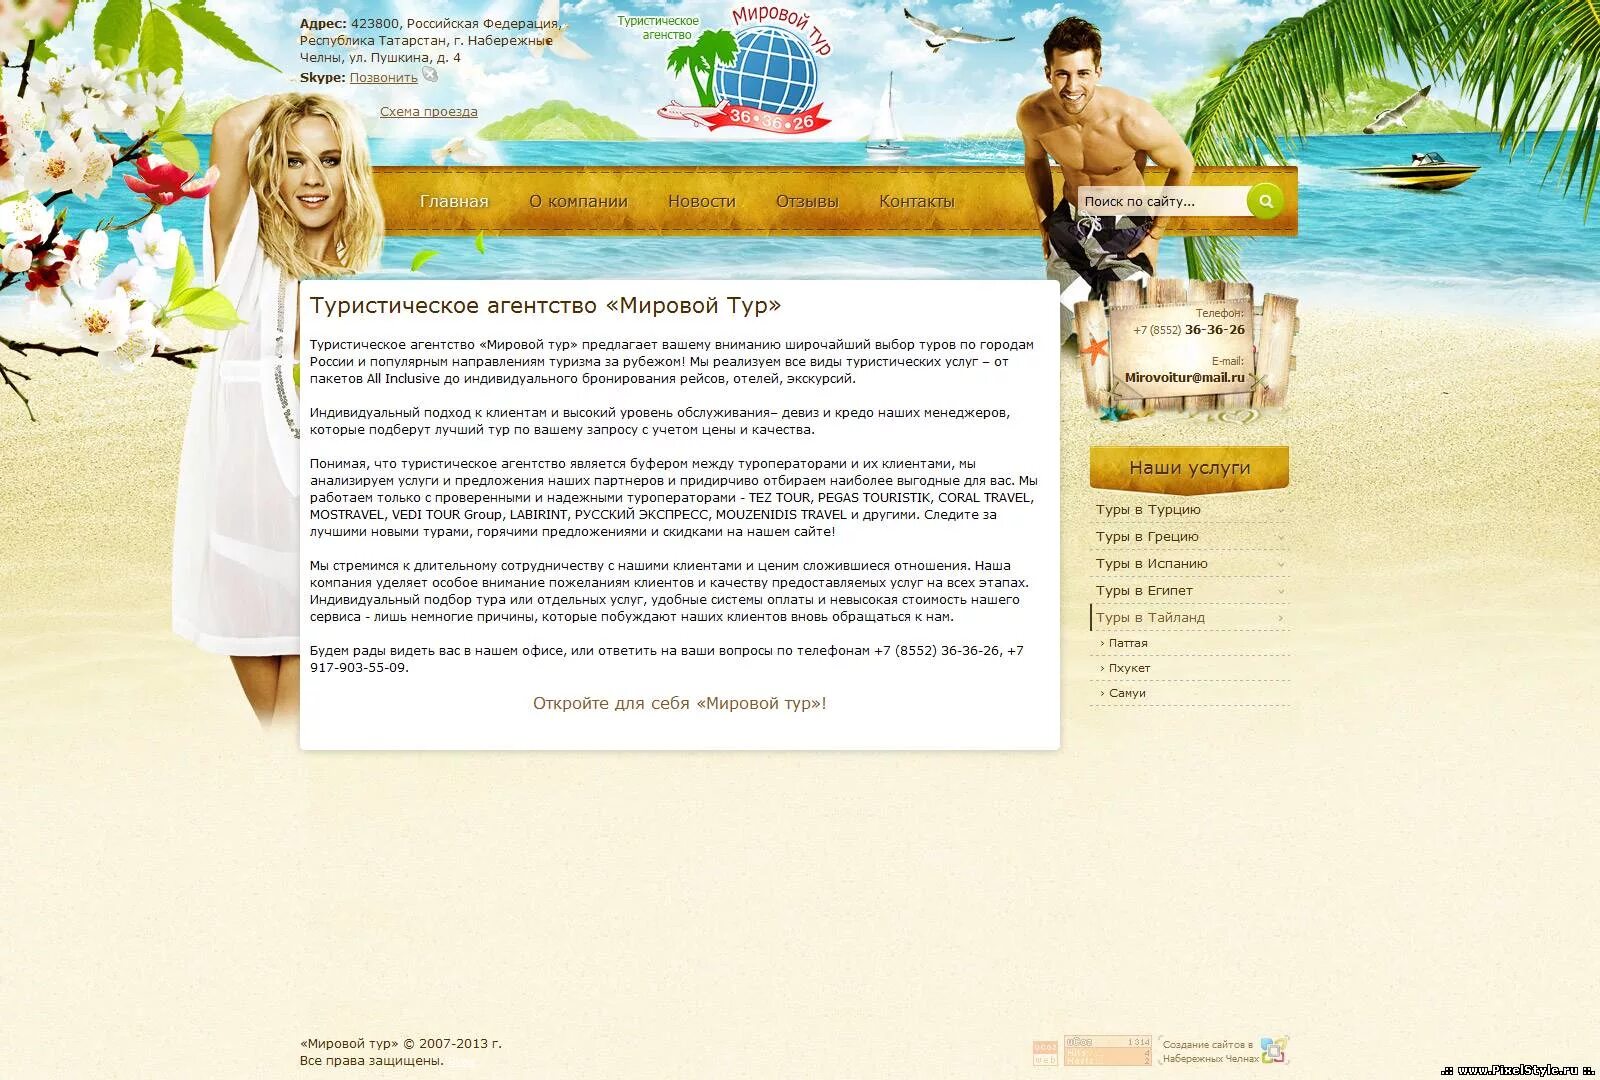 Описание туристического агентства. Описание турагентства. Туристическая компания описание. Реклама туристической компании.